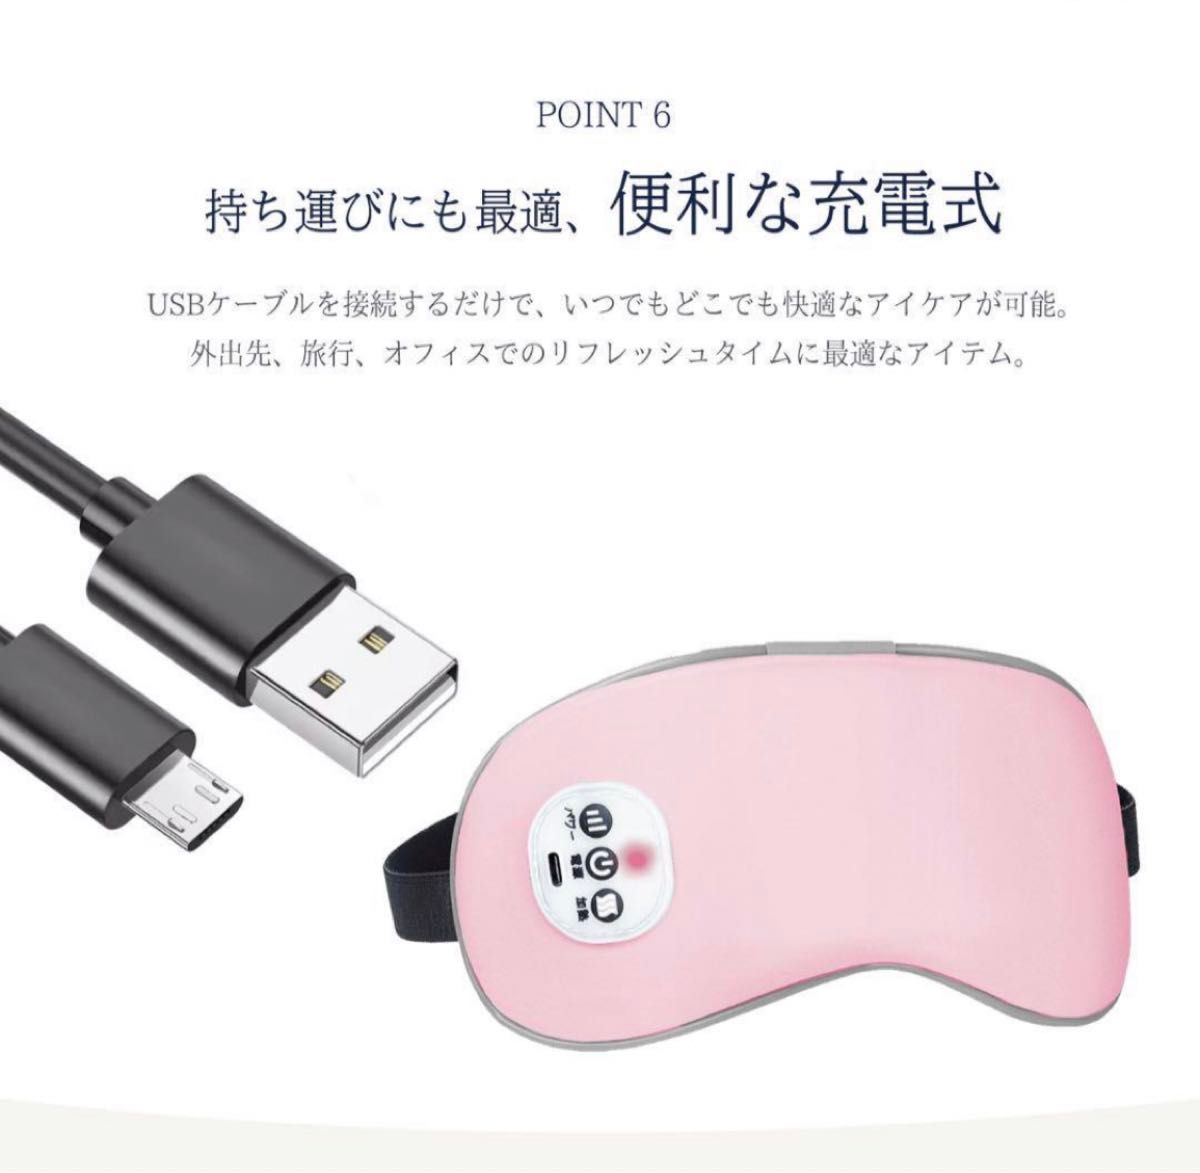 ホットアイマスク USB 充電式 アイマスク シルク 圧迫感なし コードレス A